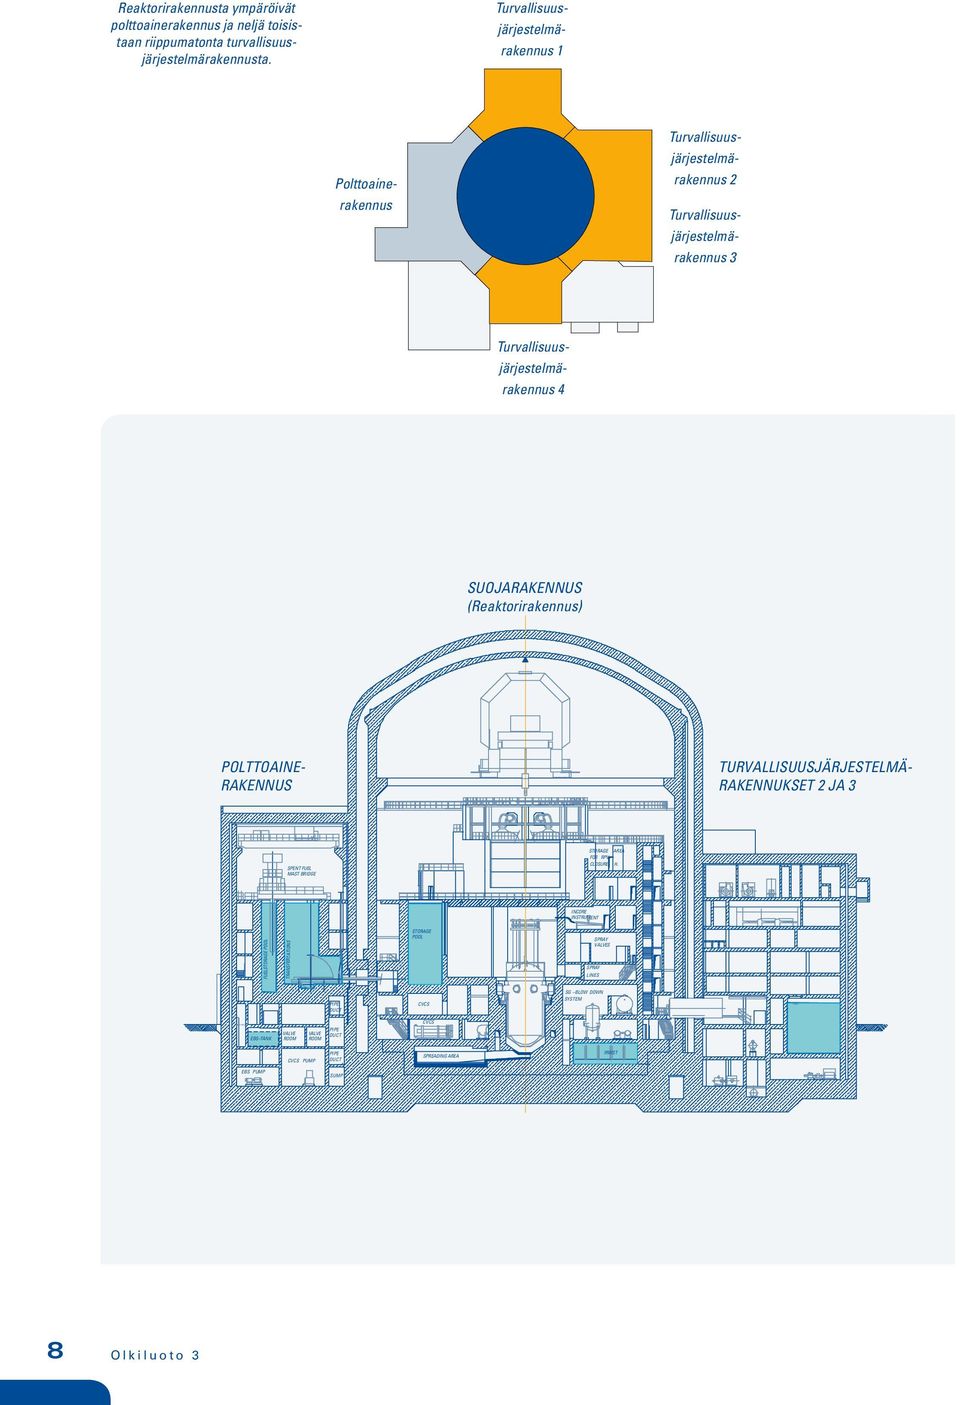 järjestelmä- rakennus Reaktorilaitoksen poikkileikkaus SUOJARAKENNUS (Reaktorirakennus) POLTTOAINE- RAKENNUS TURVALLISUUSJÄRJESTELMÄ- RAKENNUKSET JA SPENT FUEL MAST BRIDGE STORAGE